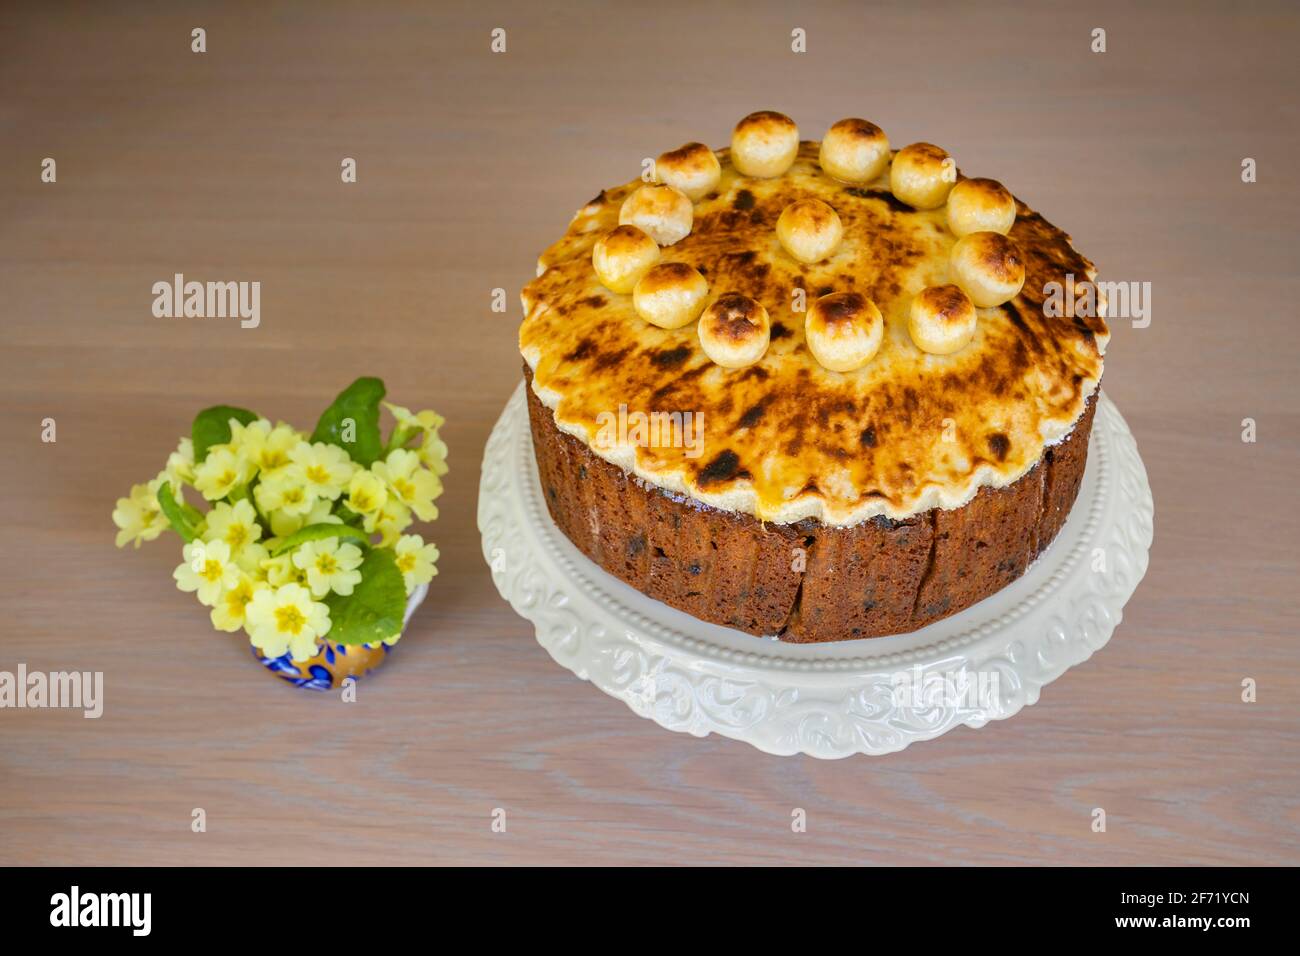 Le cadeau de Pâques : un gâteau au simnel rond maison non coupé - gâteau aux fruits avec une garniture de massepain grillée décorée de boules de massepain rondes Banque D'Images